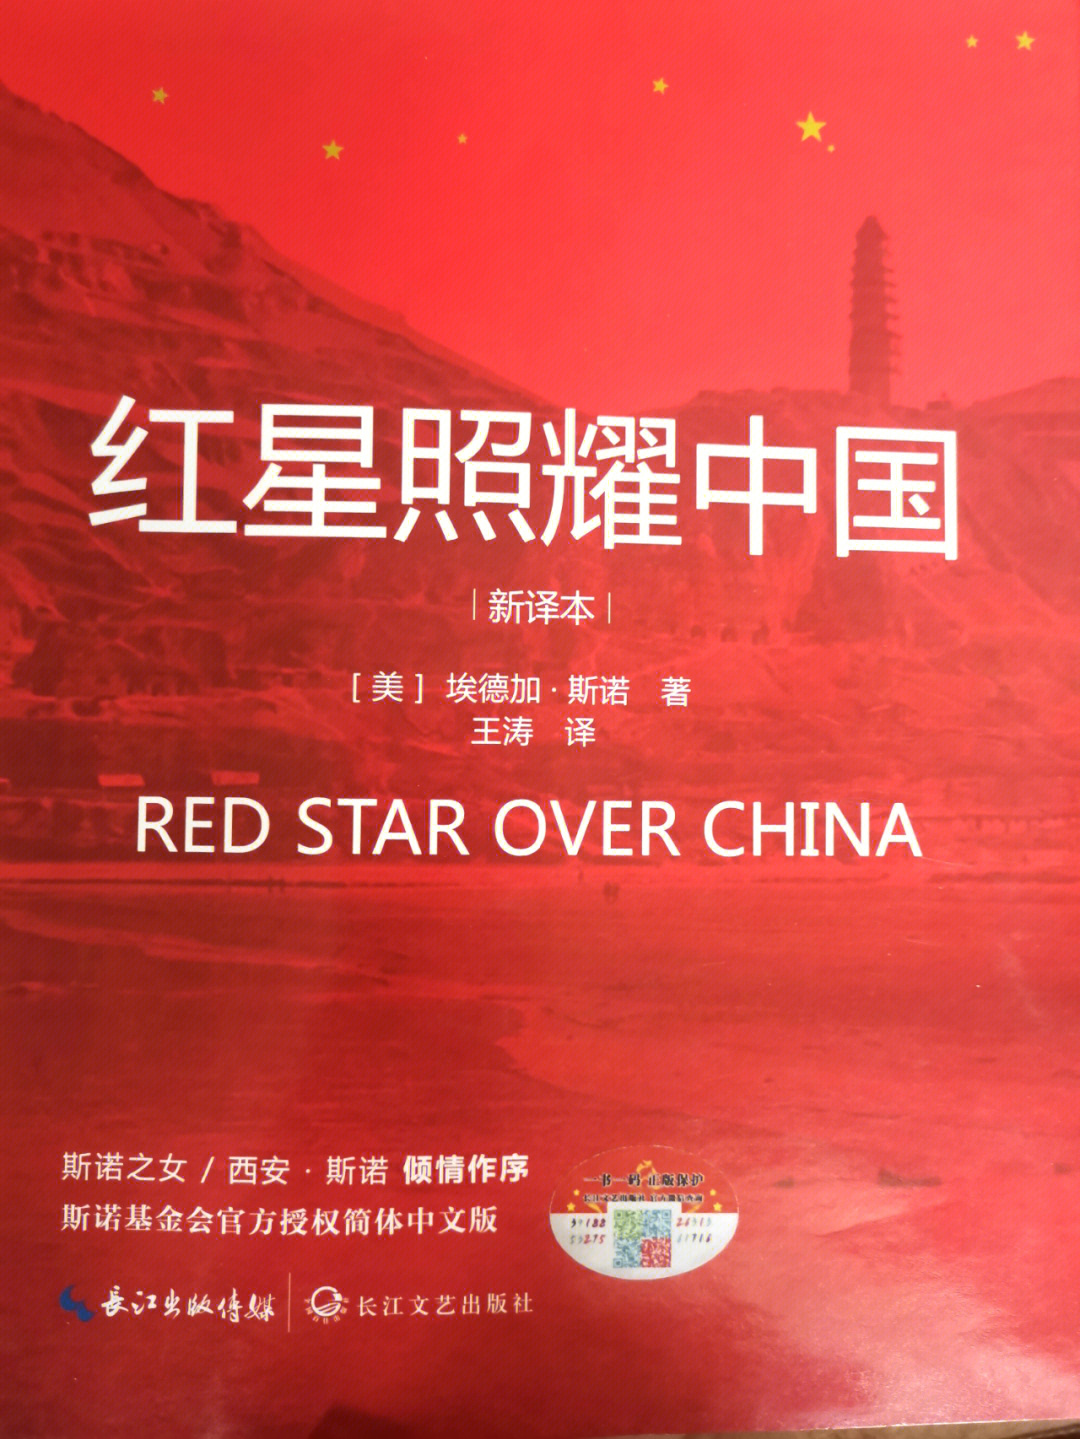 红星照耀中国章节批注  